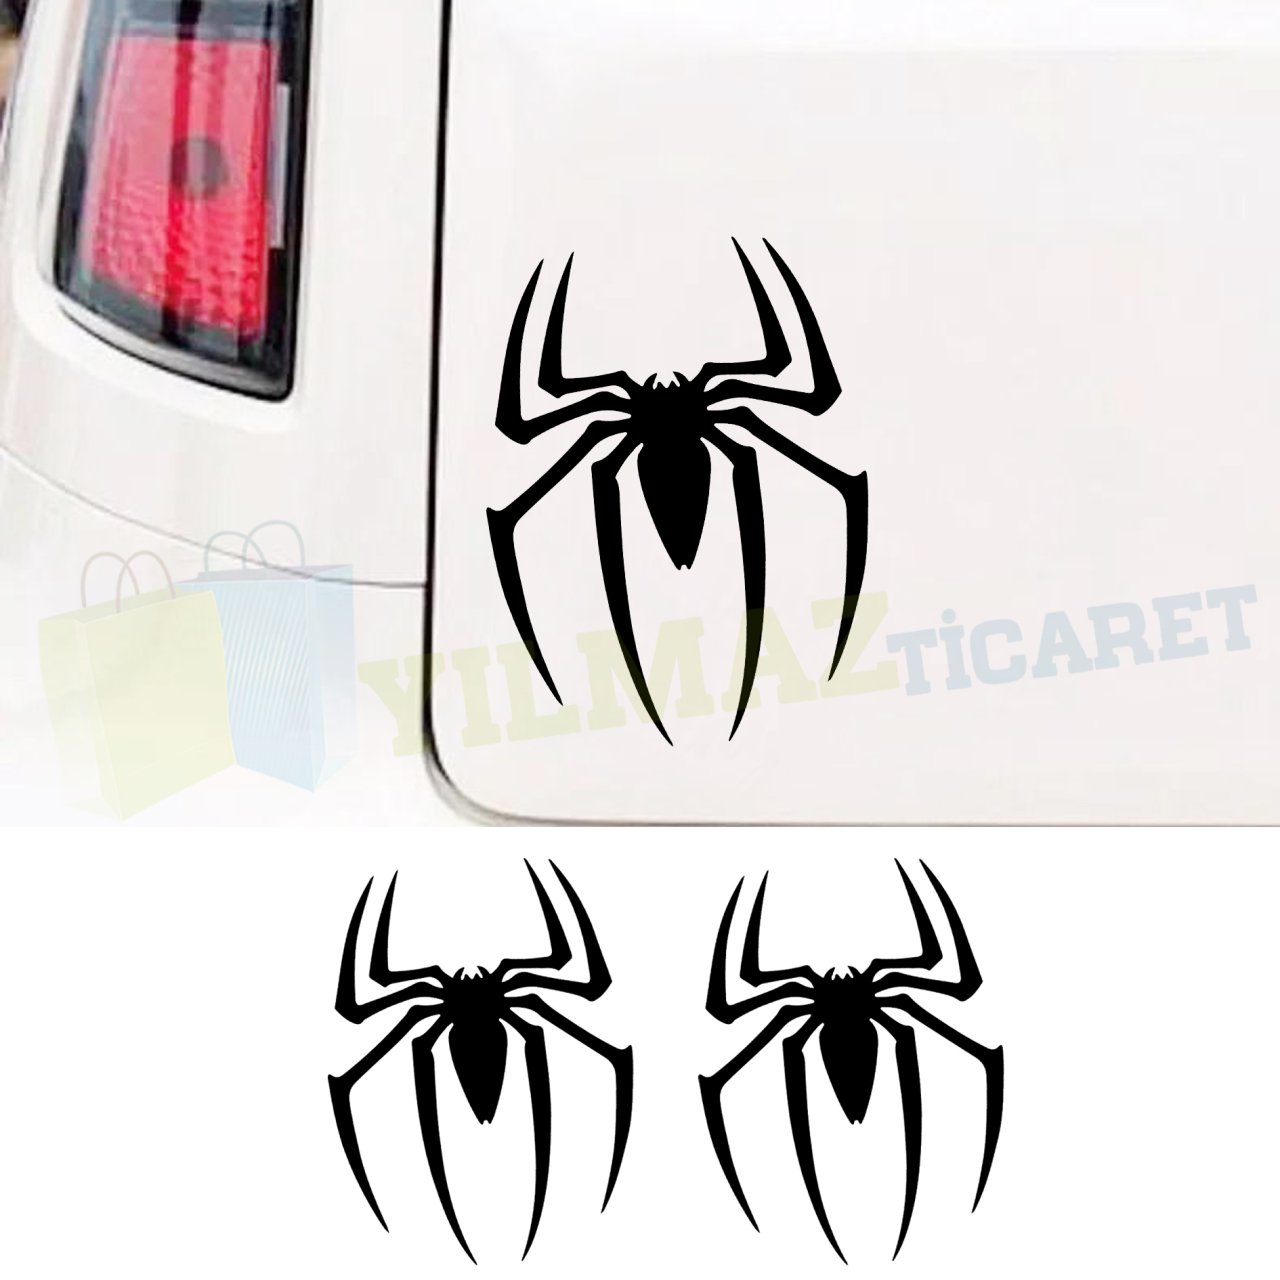 Örümcek Spiderman Cam Oto Sticker Yapıştırma Araba Etiket 2 Adet